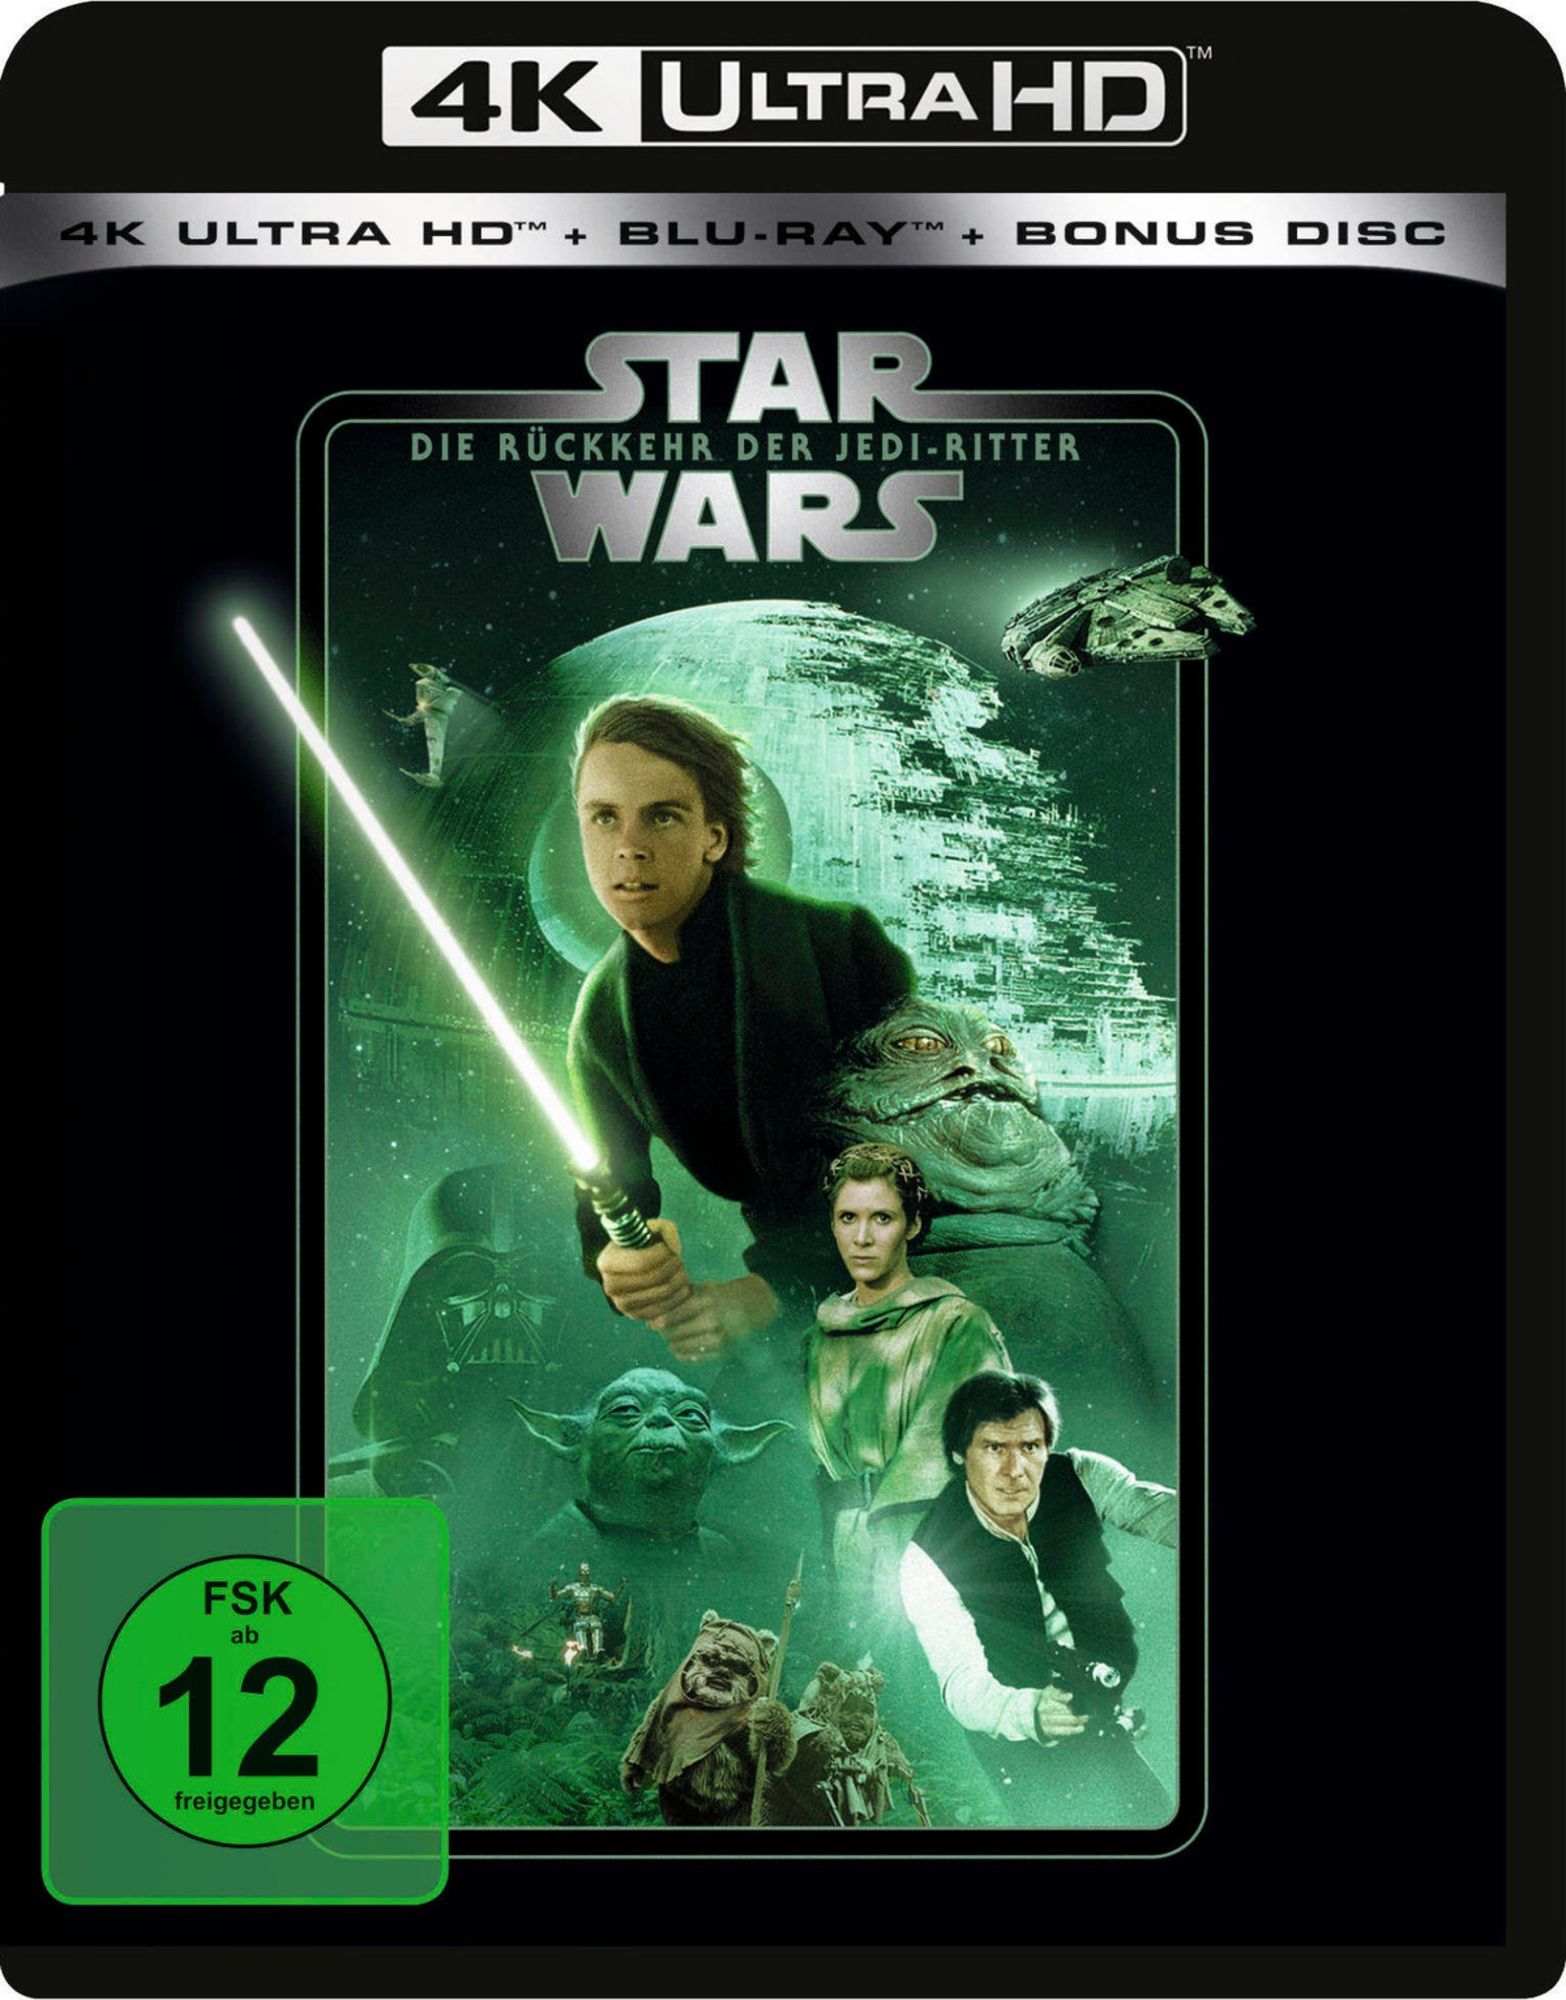 Star Wars: Episode 3 - Die Rache der Sith 4K Line Look 2020 Edition 4K UHD  + Blu-ray + Bonus Blu-ray Blu-ray - Film Details